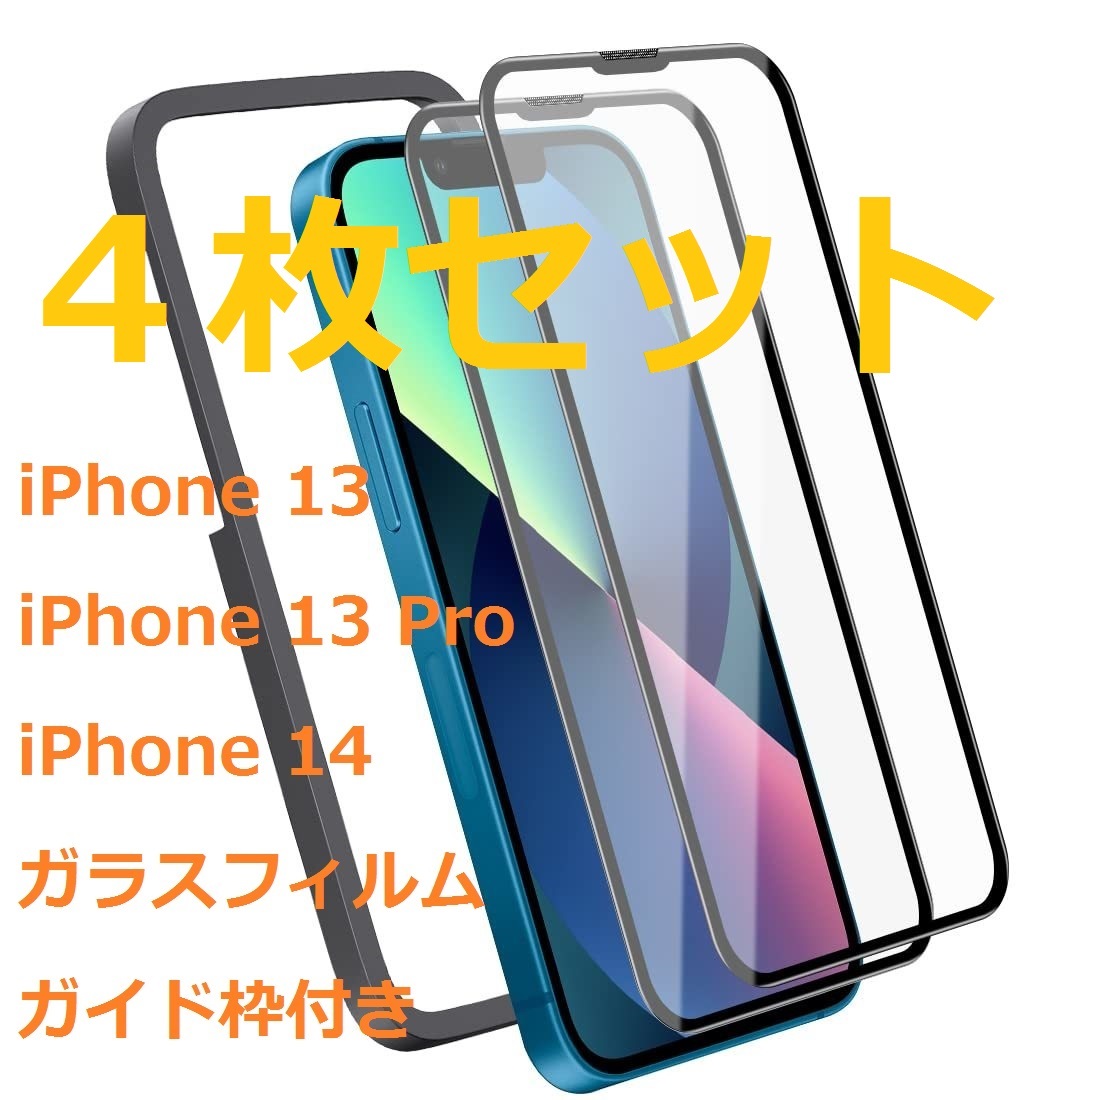 【処分・４枚セット】iPhone 13/ 13 Pro/ iPhone 14 ガラスフィルム 6.1インチ用 日本AGC素材採用 ガイド枠付き 保護フィルム 強化ガラス_画像1